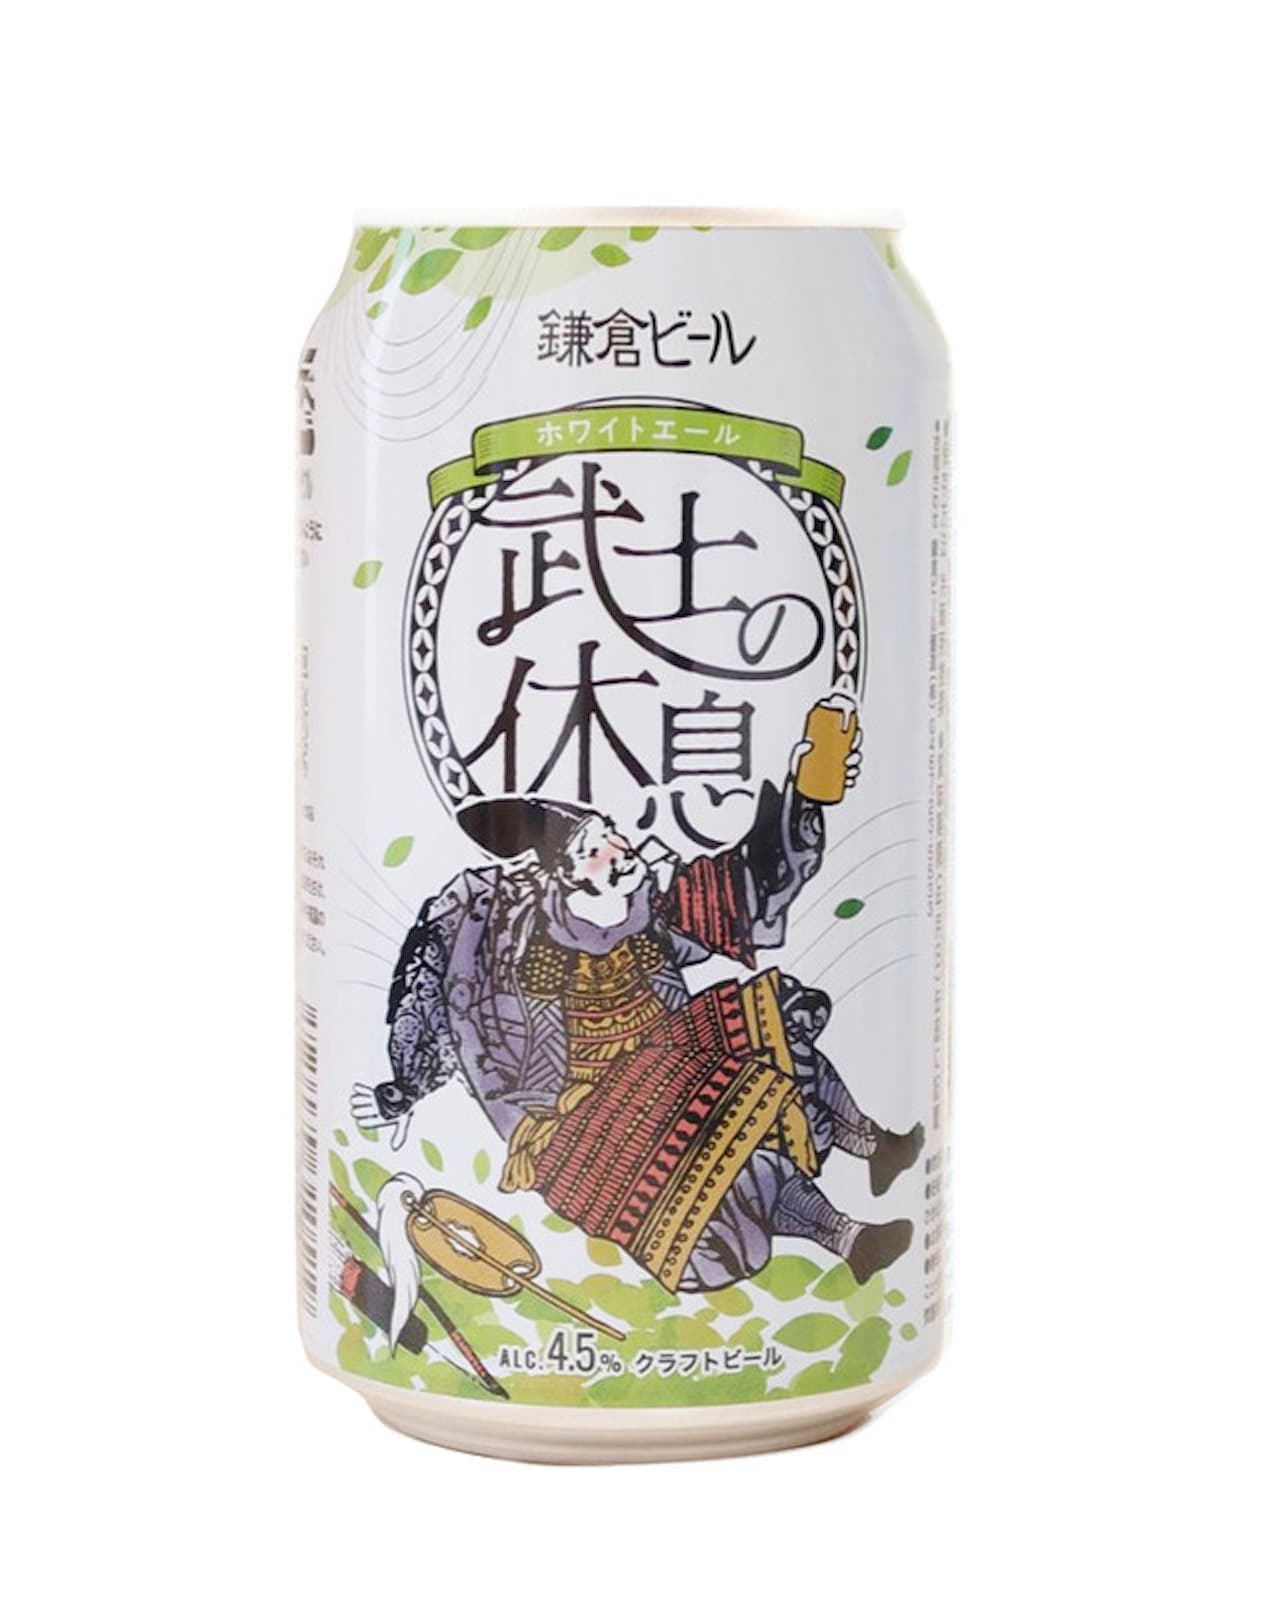 クラフトビール「鎌倉武士の休息」